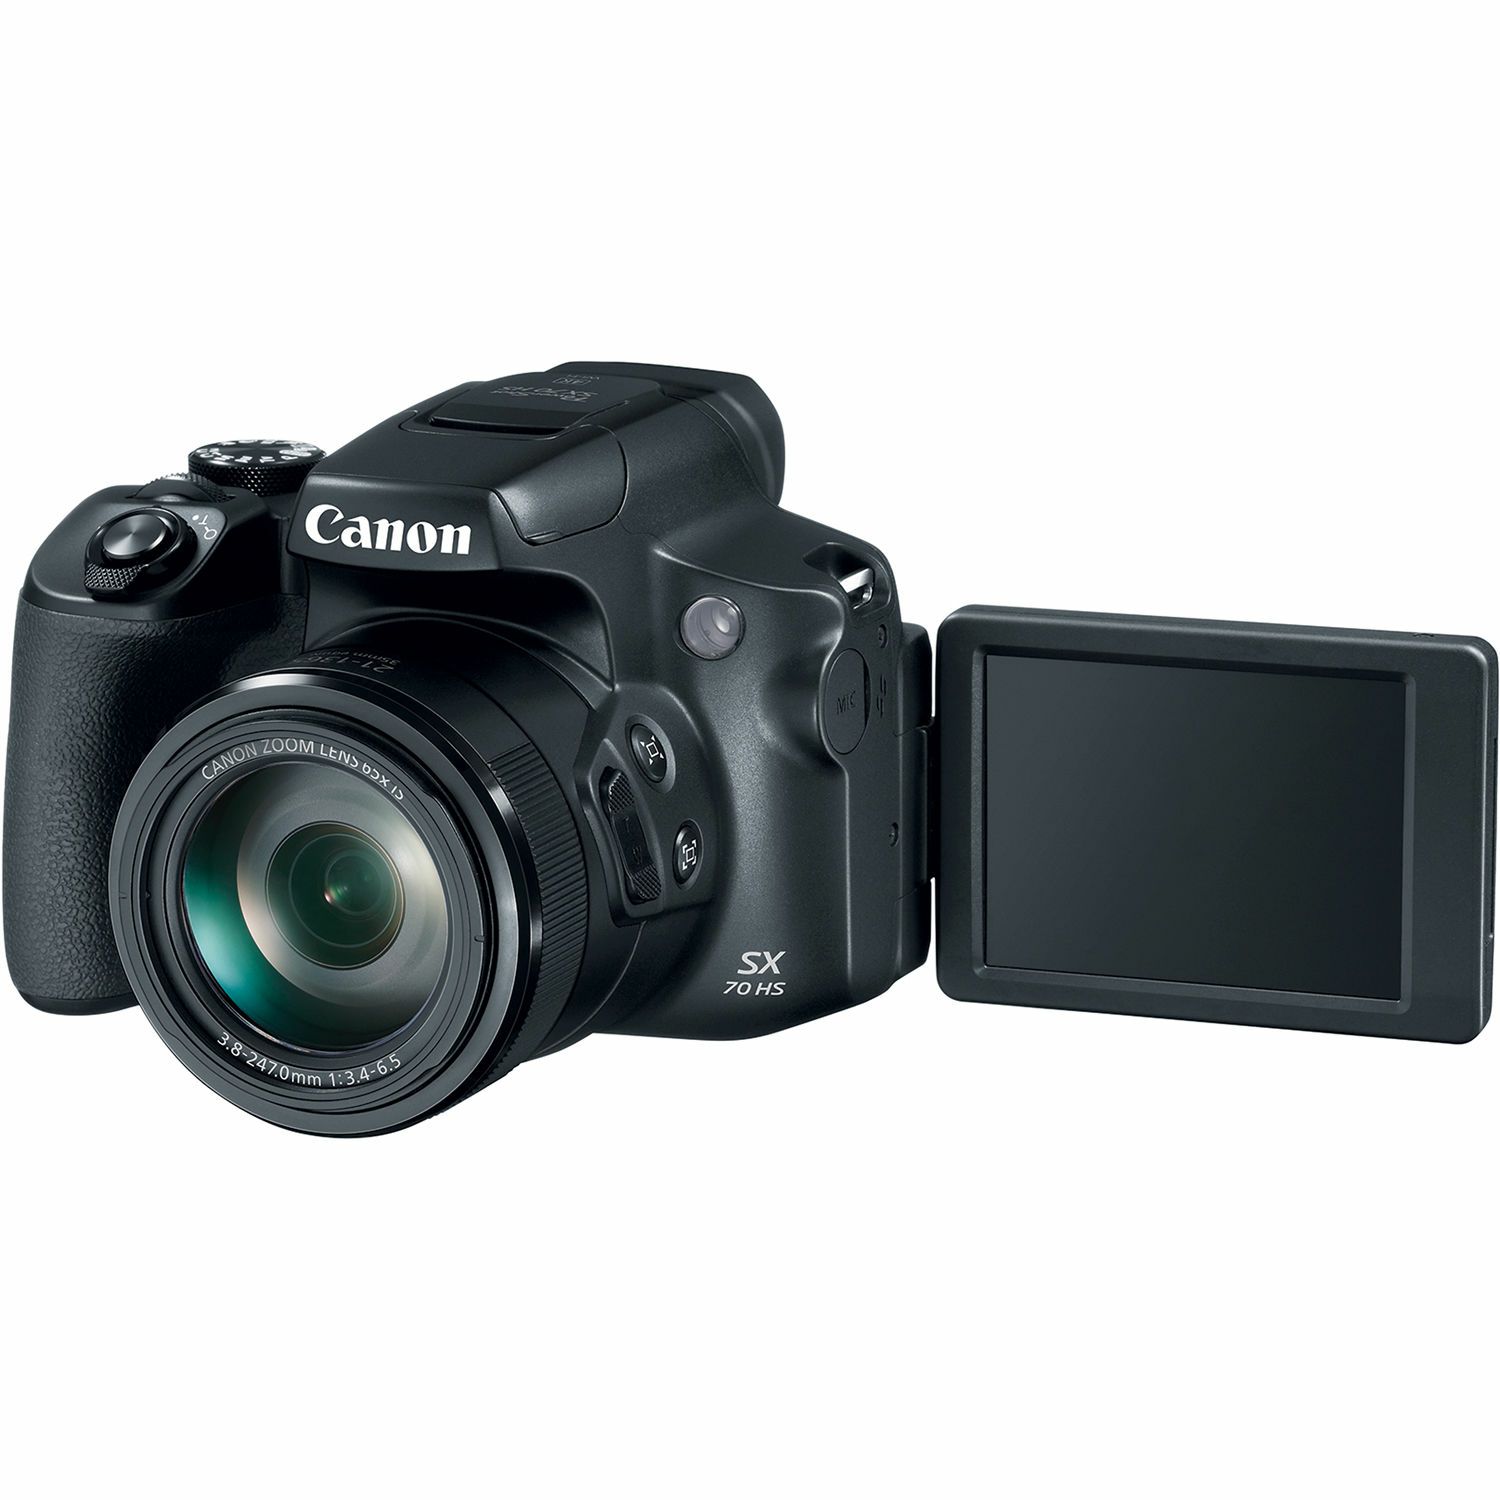 Canon PowerShot SX70 HS kompaktni digitalni fotoaparat SX70HS ultrazoom 65x s integriranim objektivom 3.8-247mm f/3.4-6.5 IS (3071C002AA)